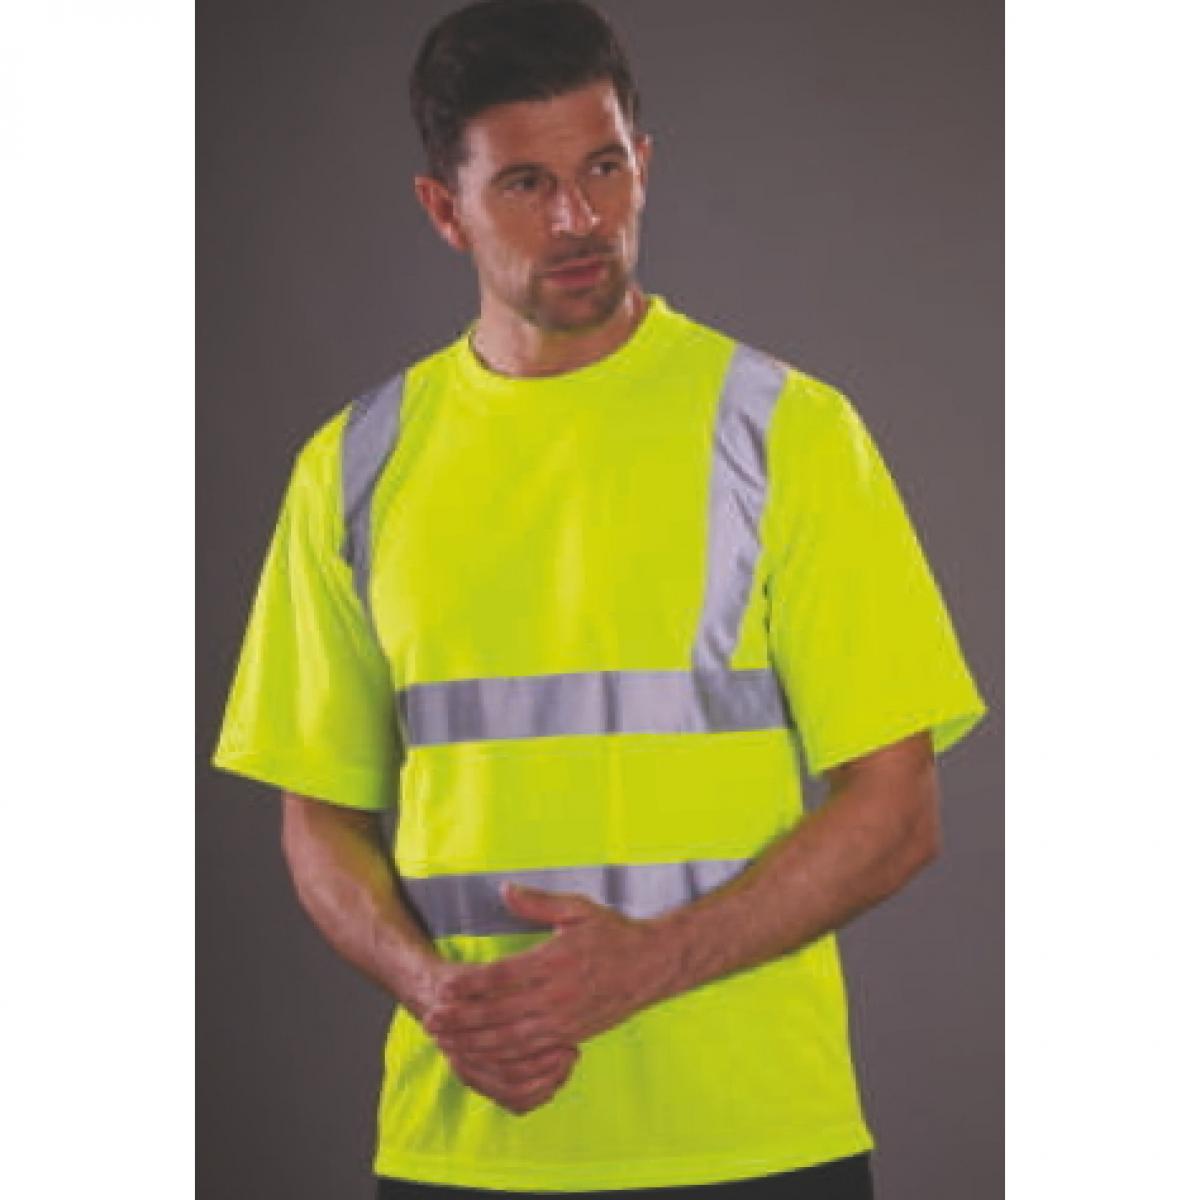 Hersteller: YOKO Herstellernummer: HVJ410 Artikelbezeichnung: Herren Hi Vis sicherheits T-Shirt EN ISO 20471 bis 6XL Farbe: Hi-Vis Yellow